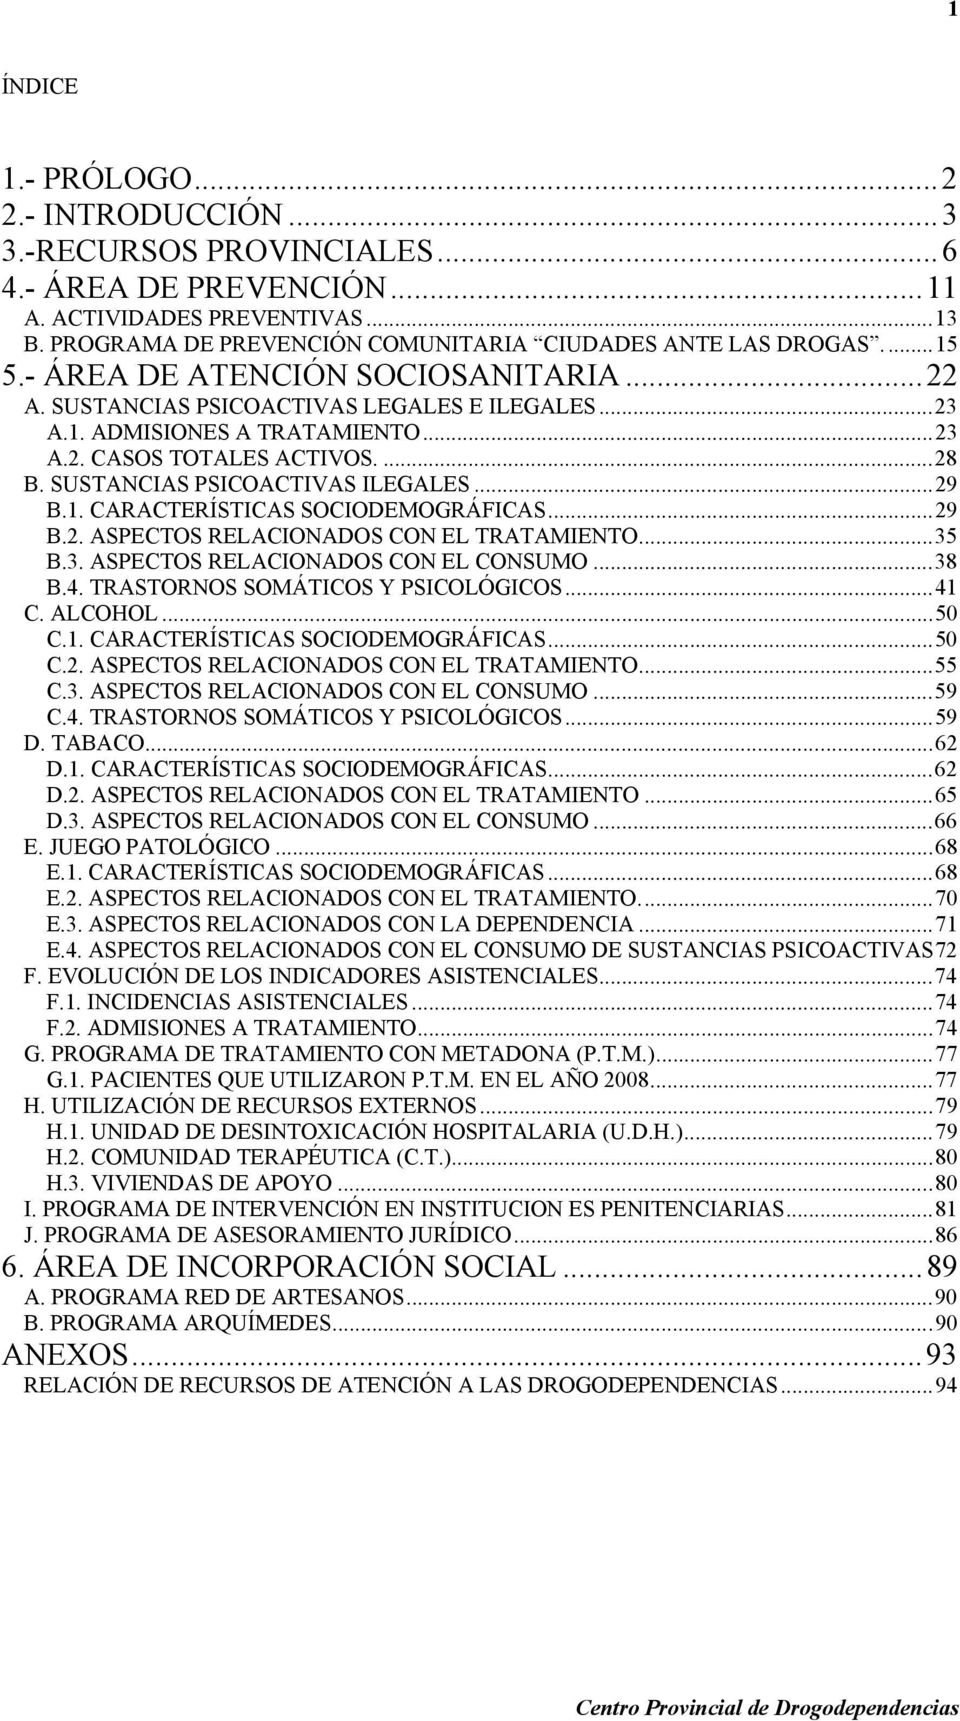 SUSTANCIAS PSICOACTIVAS ILEGALES...29 B.1. CARACTERÍSTICAS SOCIODEMOGRÁFICAS...29 B.2. ASPECTOS RELACIONADOS CON EL TRATAMIENTO...35 B.3. ASPECTOS RELACIONADOS CON EL CONSUMO...38 B.4.